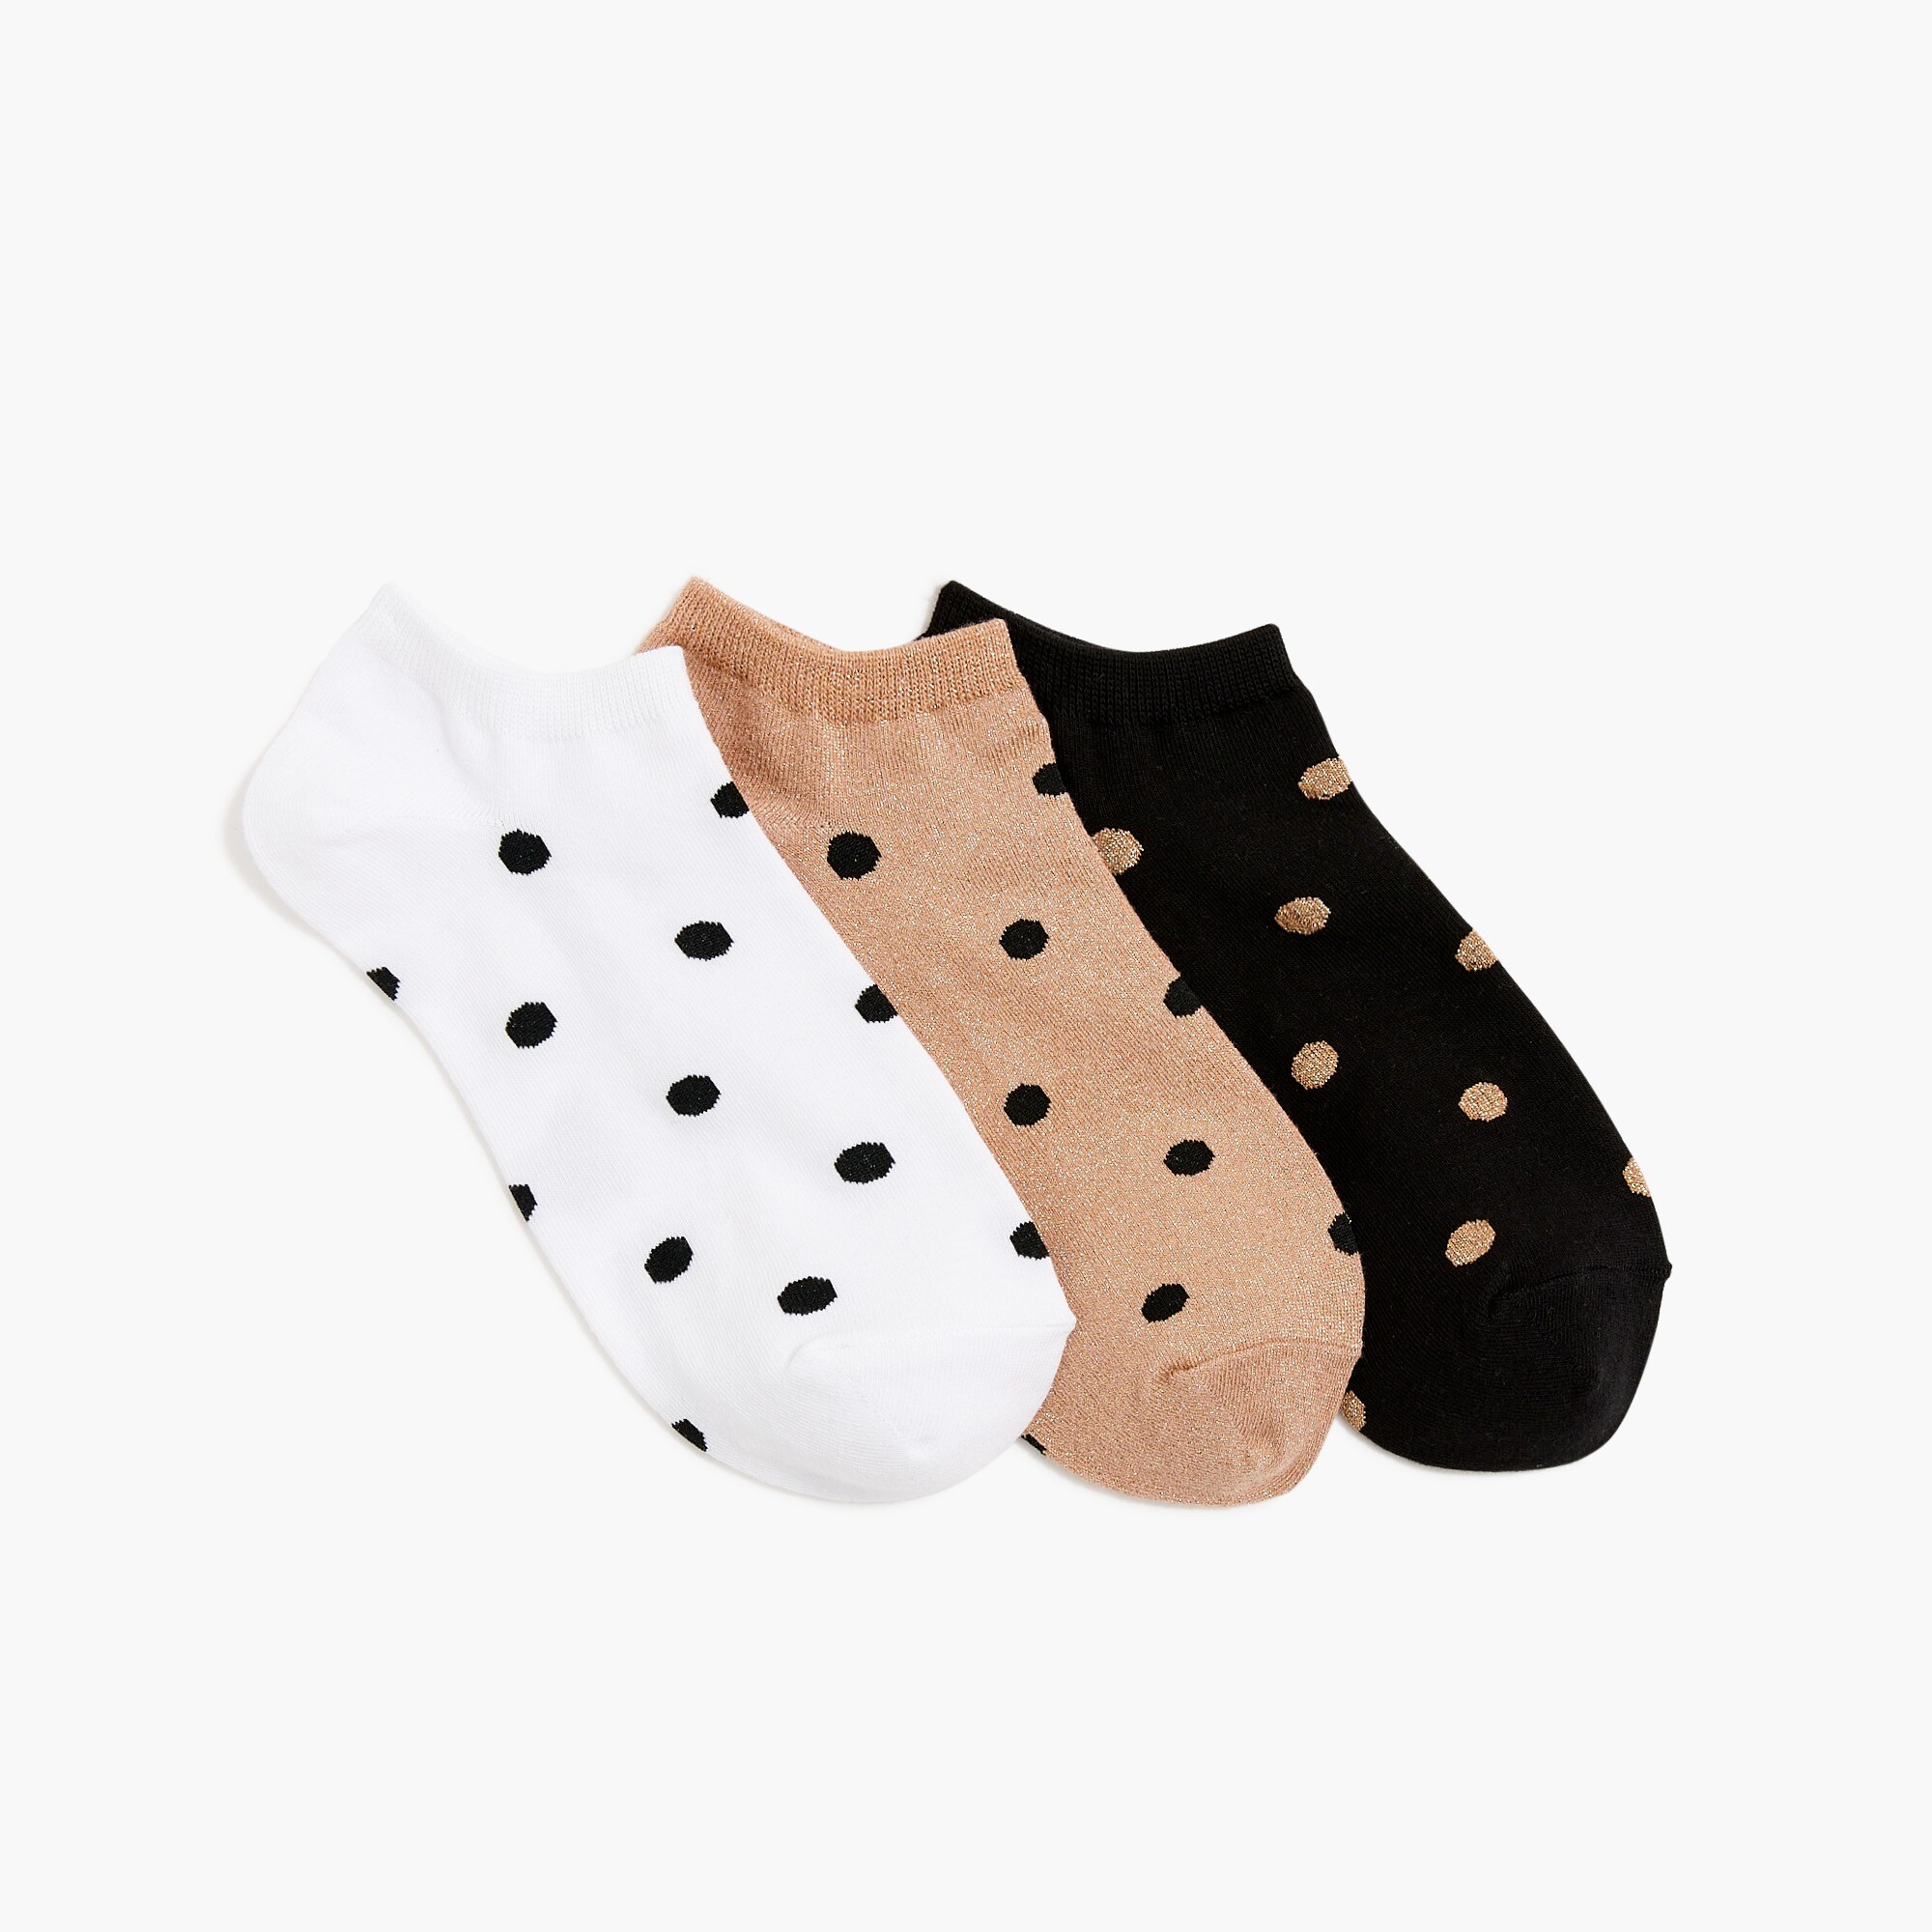  Polka-dot ankle socks three-pack